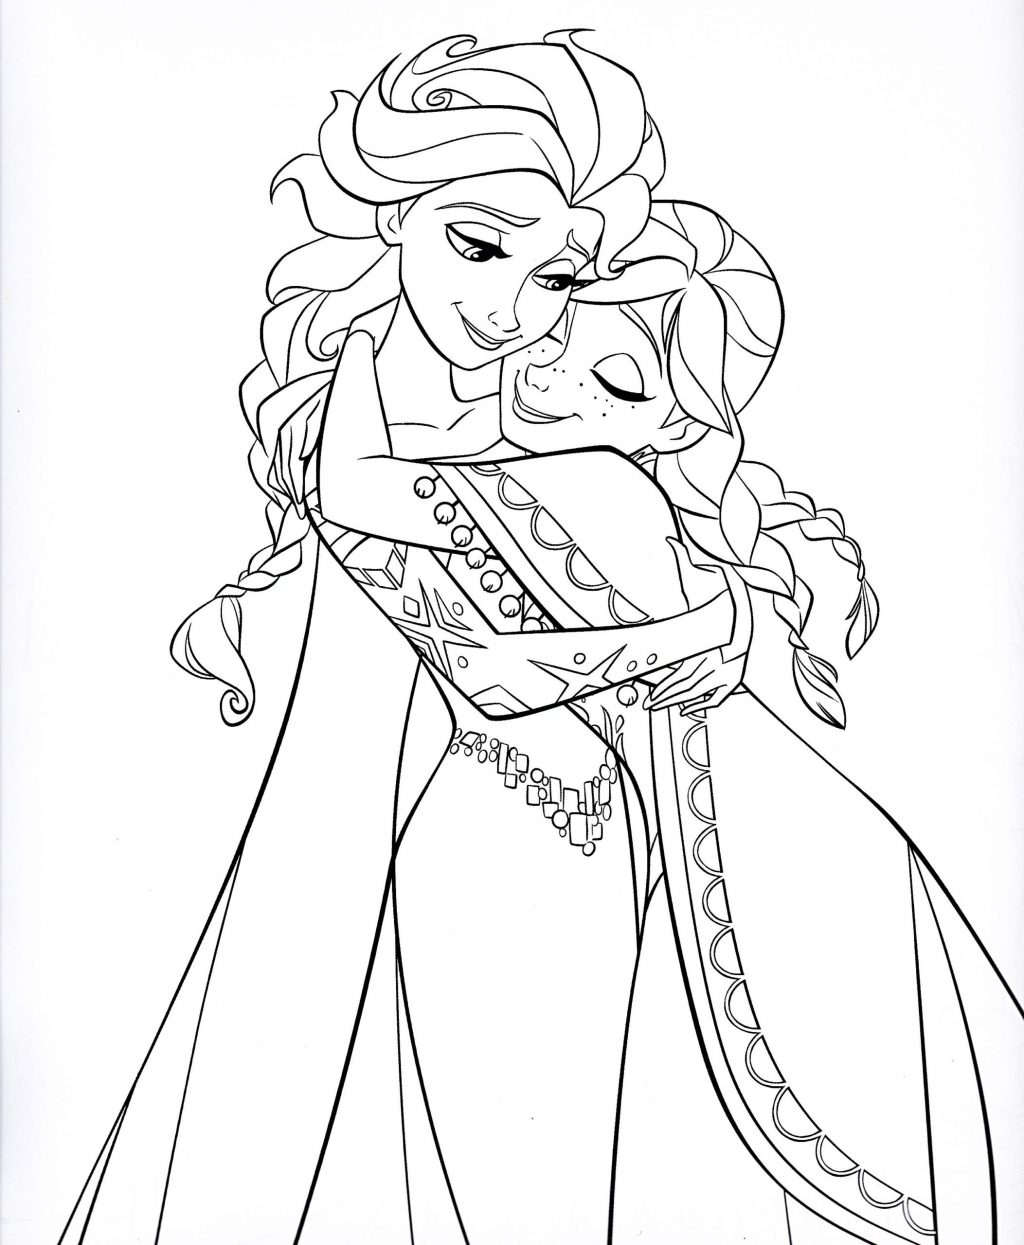 desenho das princesas para colorir